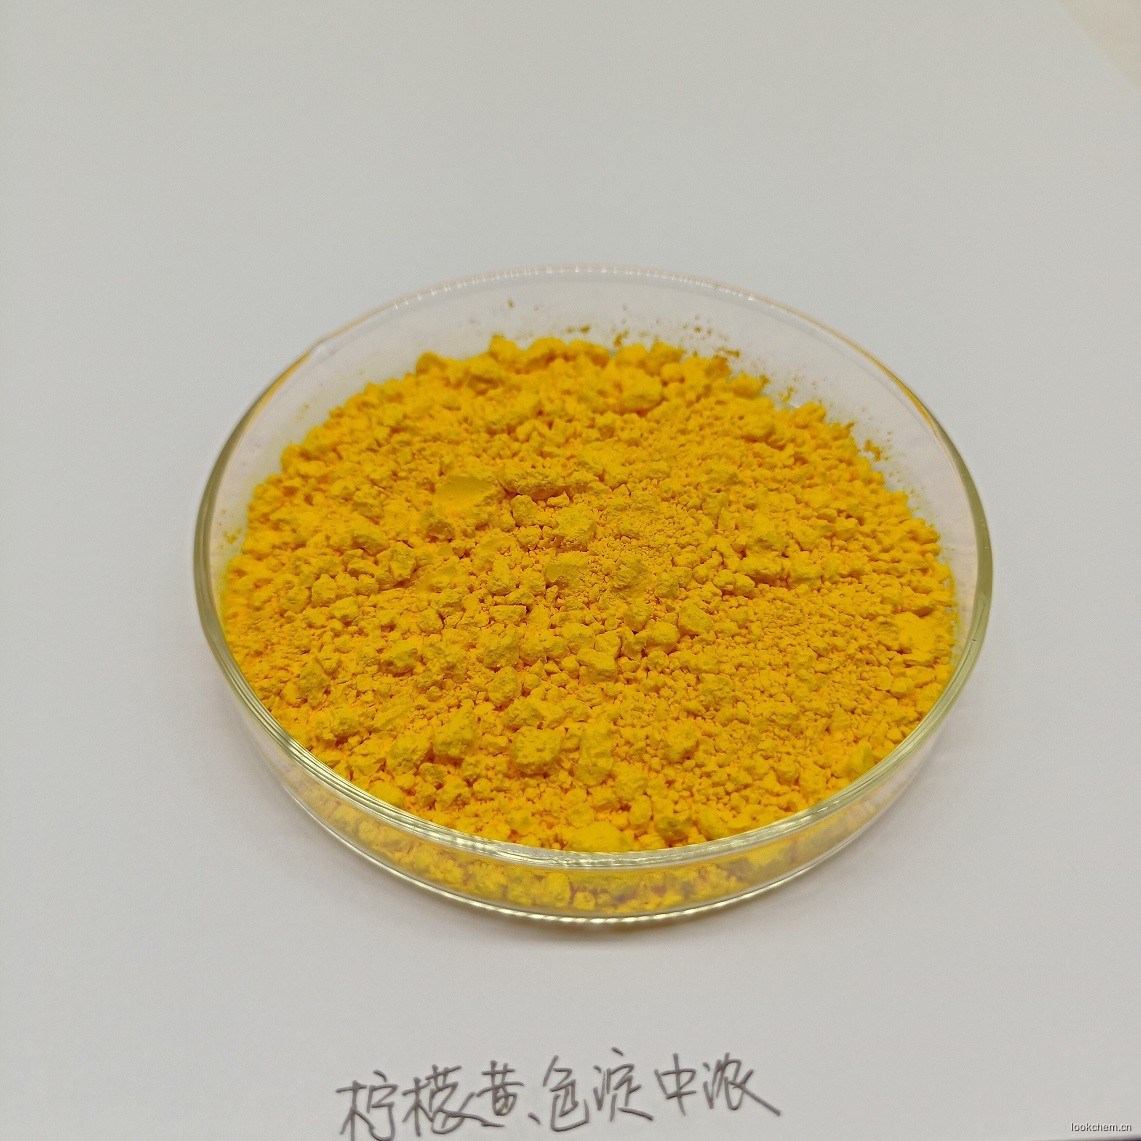 柠檬黄铝色淀 CI 19140:1 化妆品专用色淀 IDACOL 色素